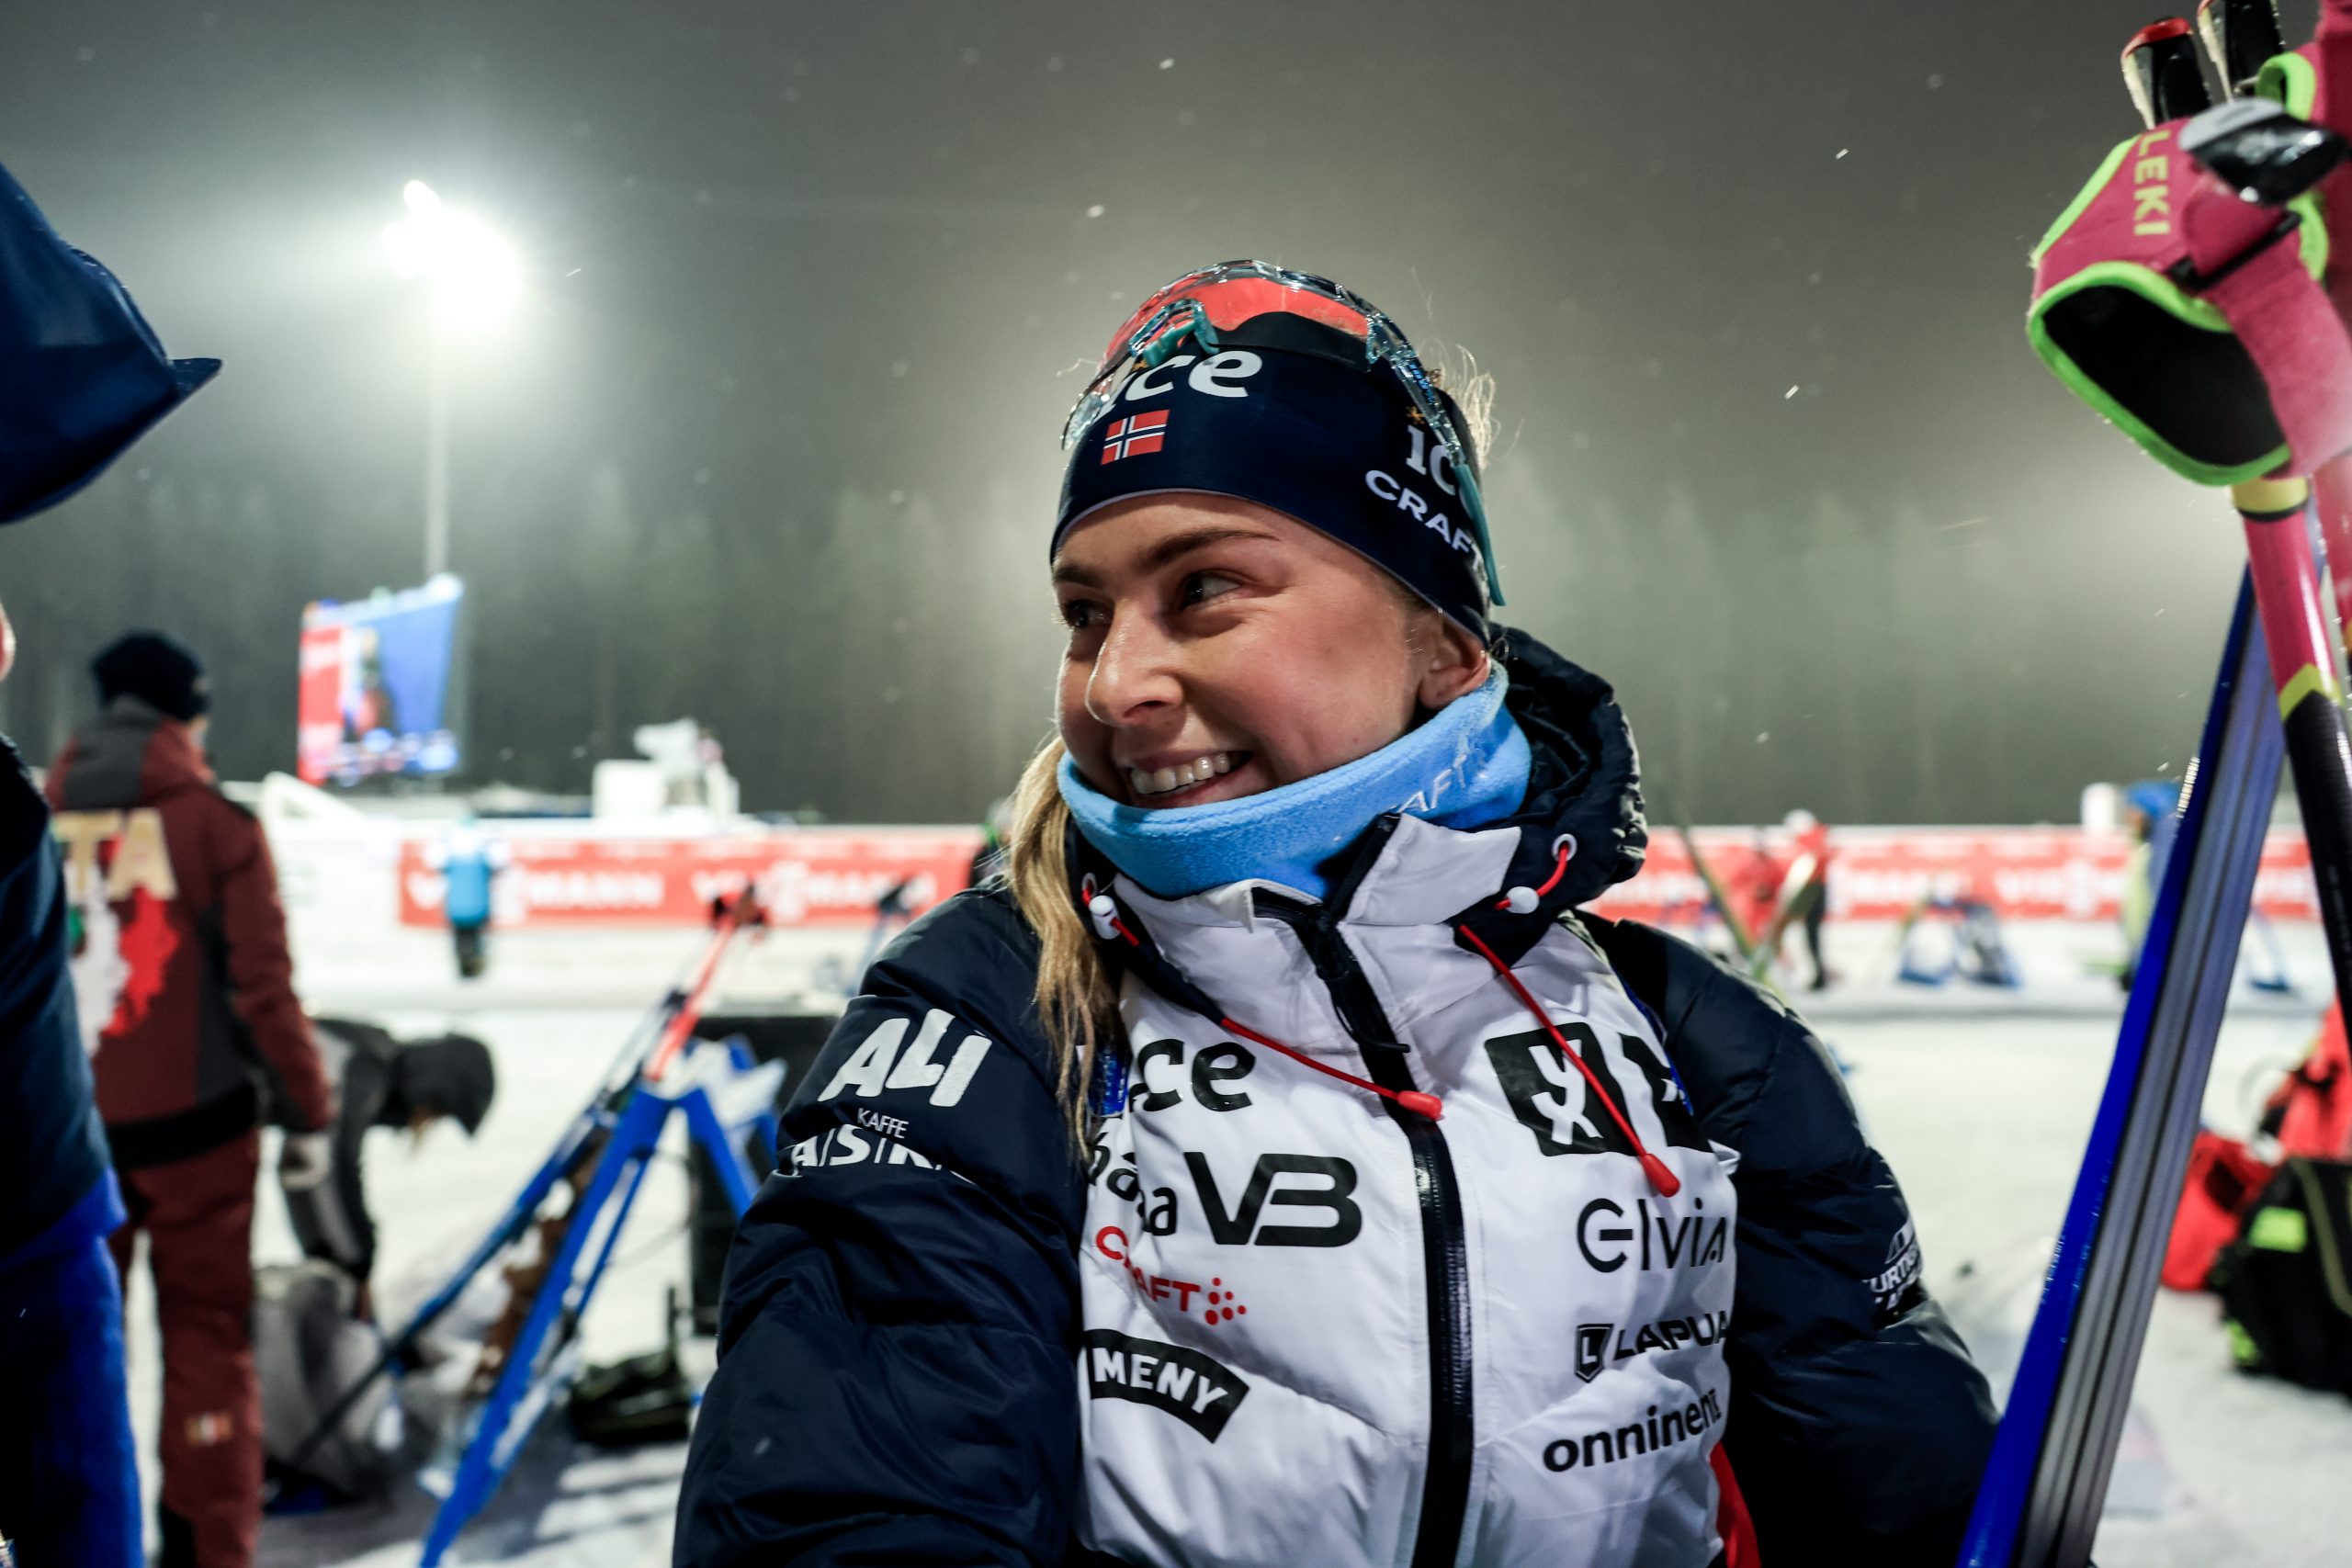 LaVita-Biathlon - Tippen, Mitfiebern & Gewinnen!